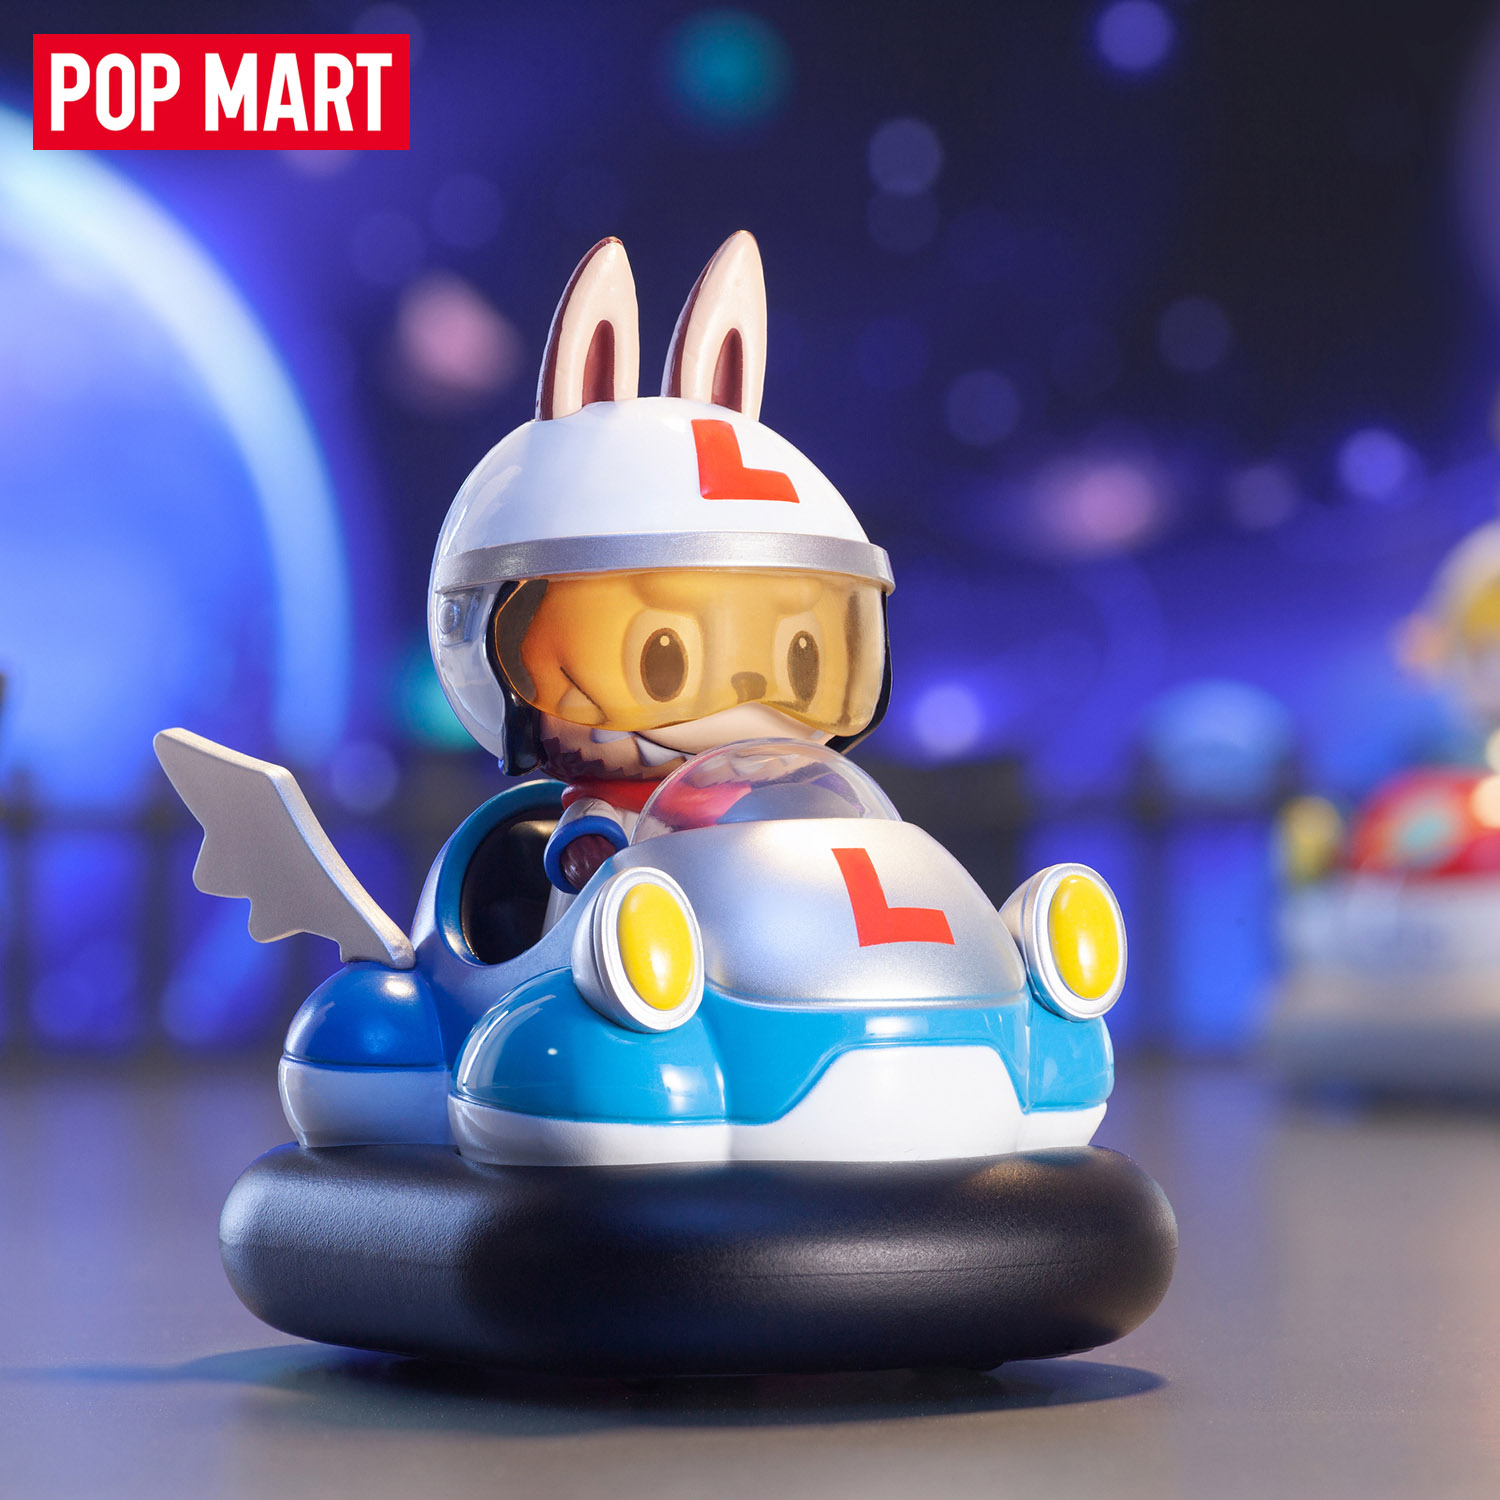 Коллекционная фигурка Pop Mart Popcar Bumper Car